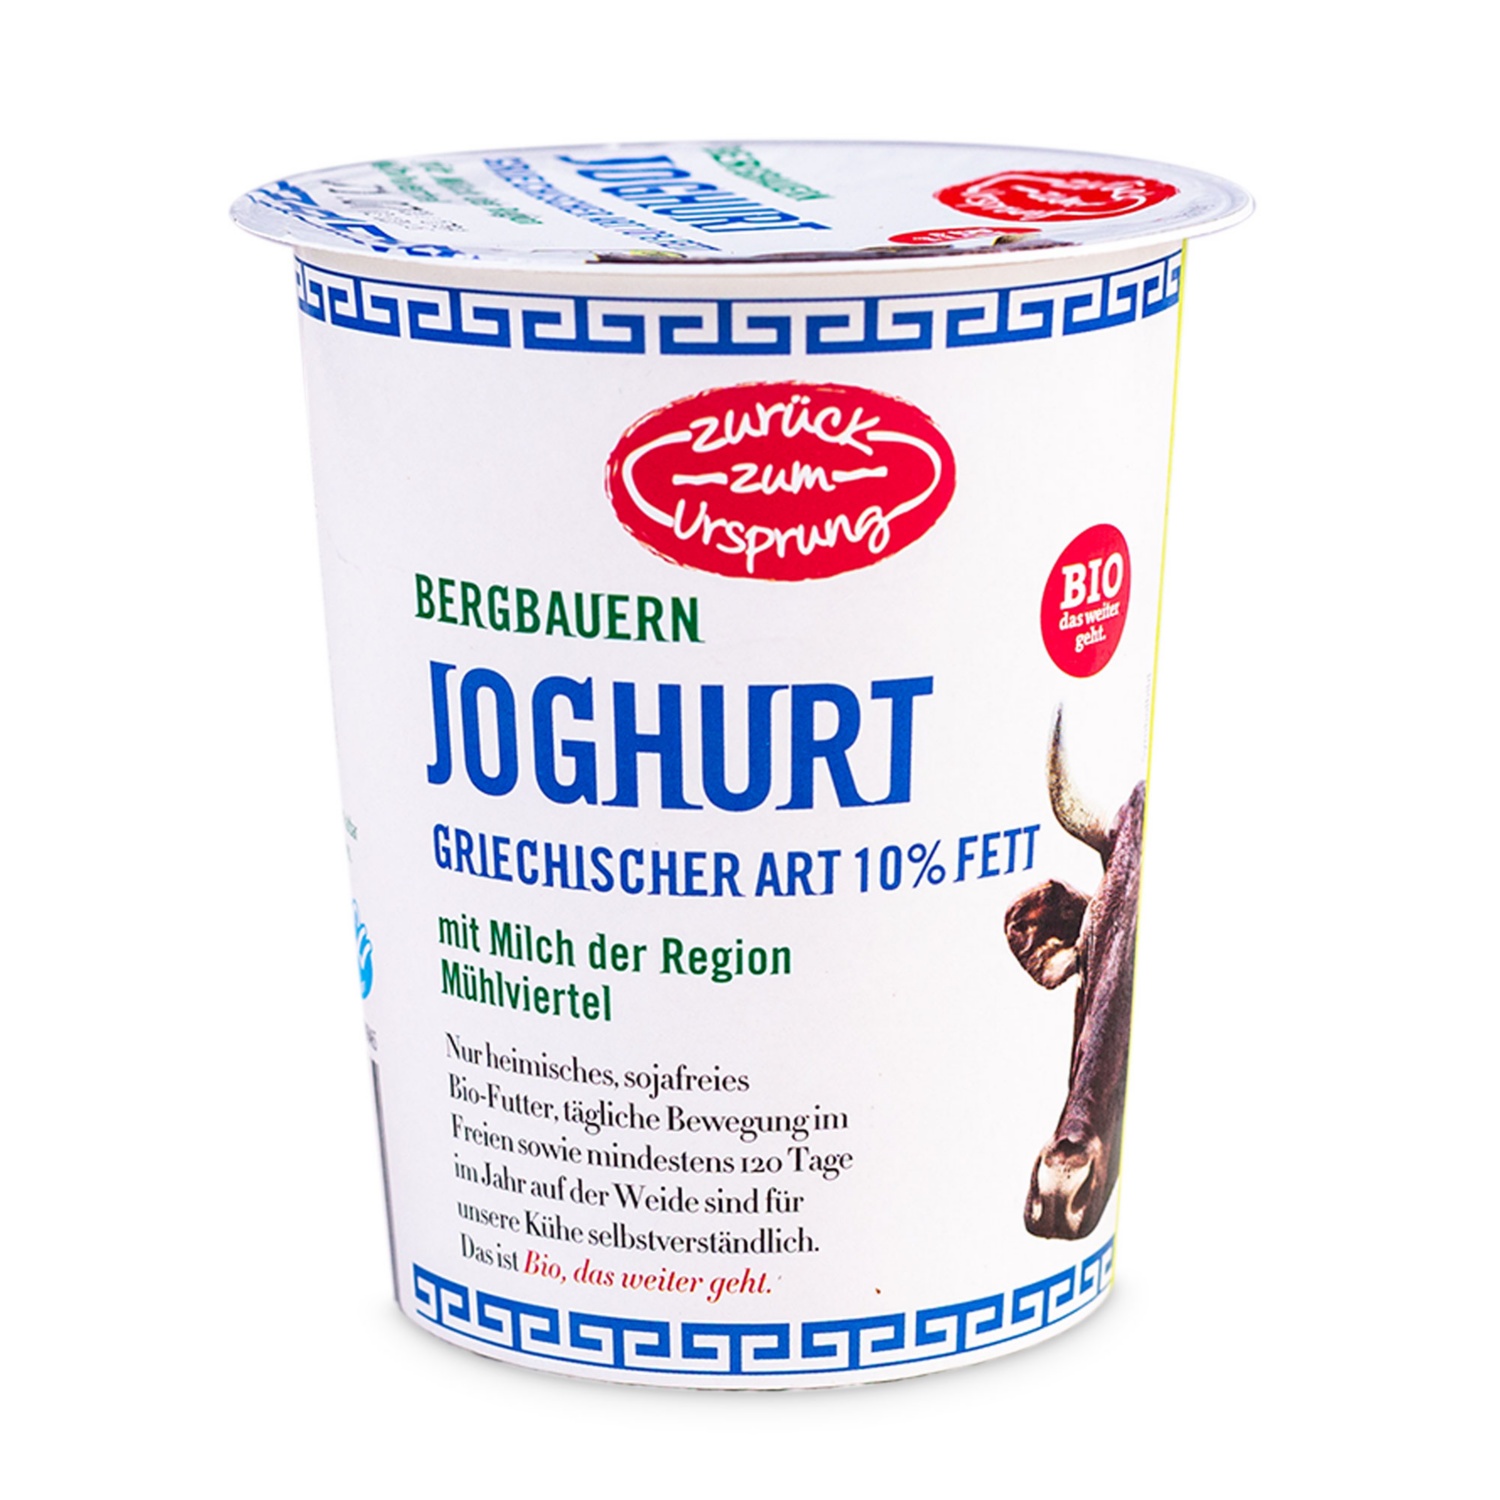 BIO-Joghurt griechische Art, 10% Fett